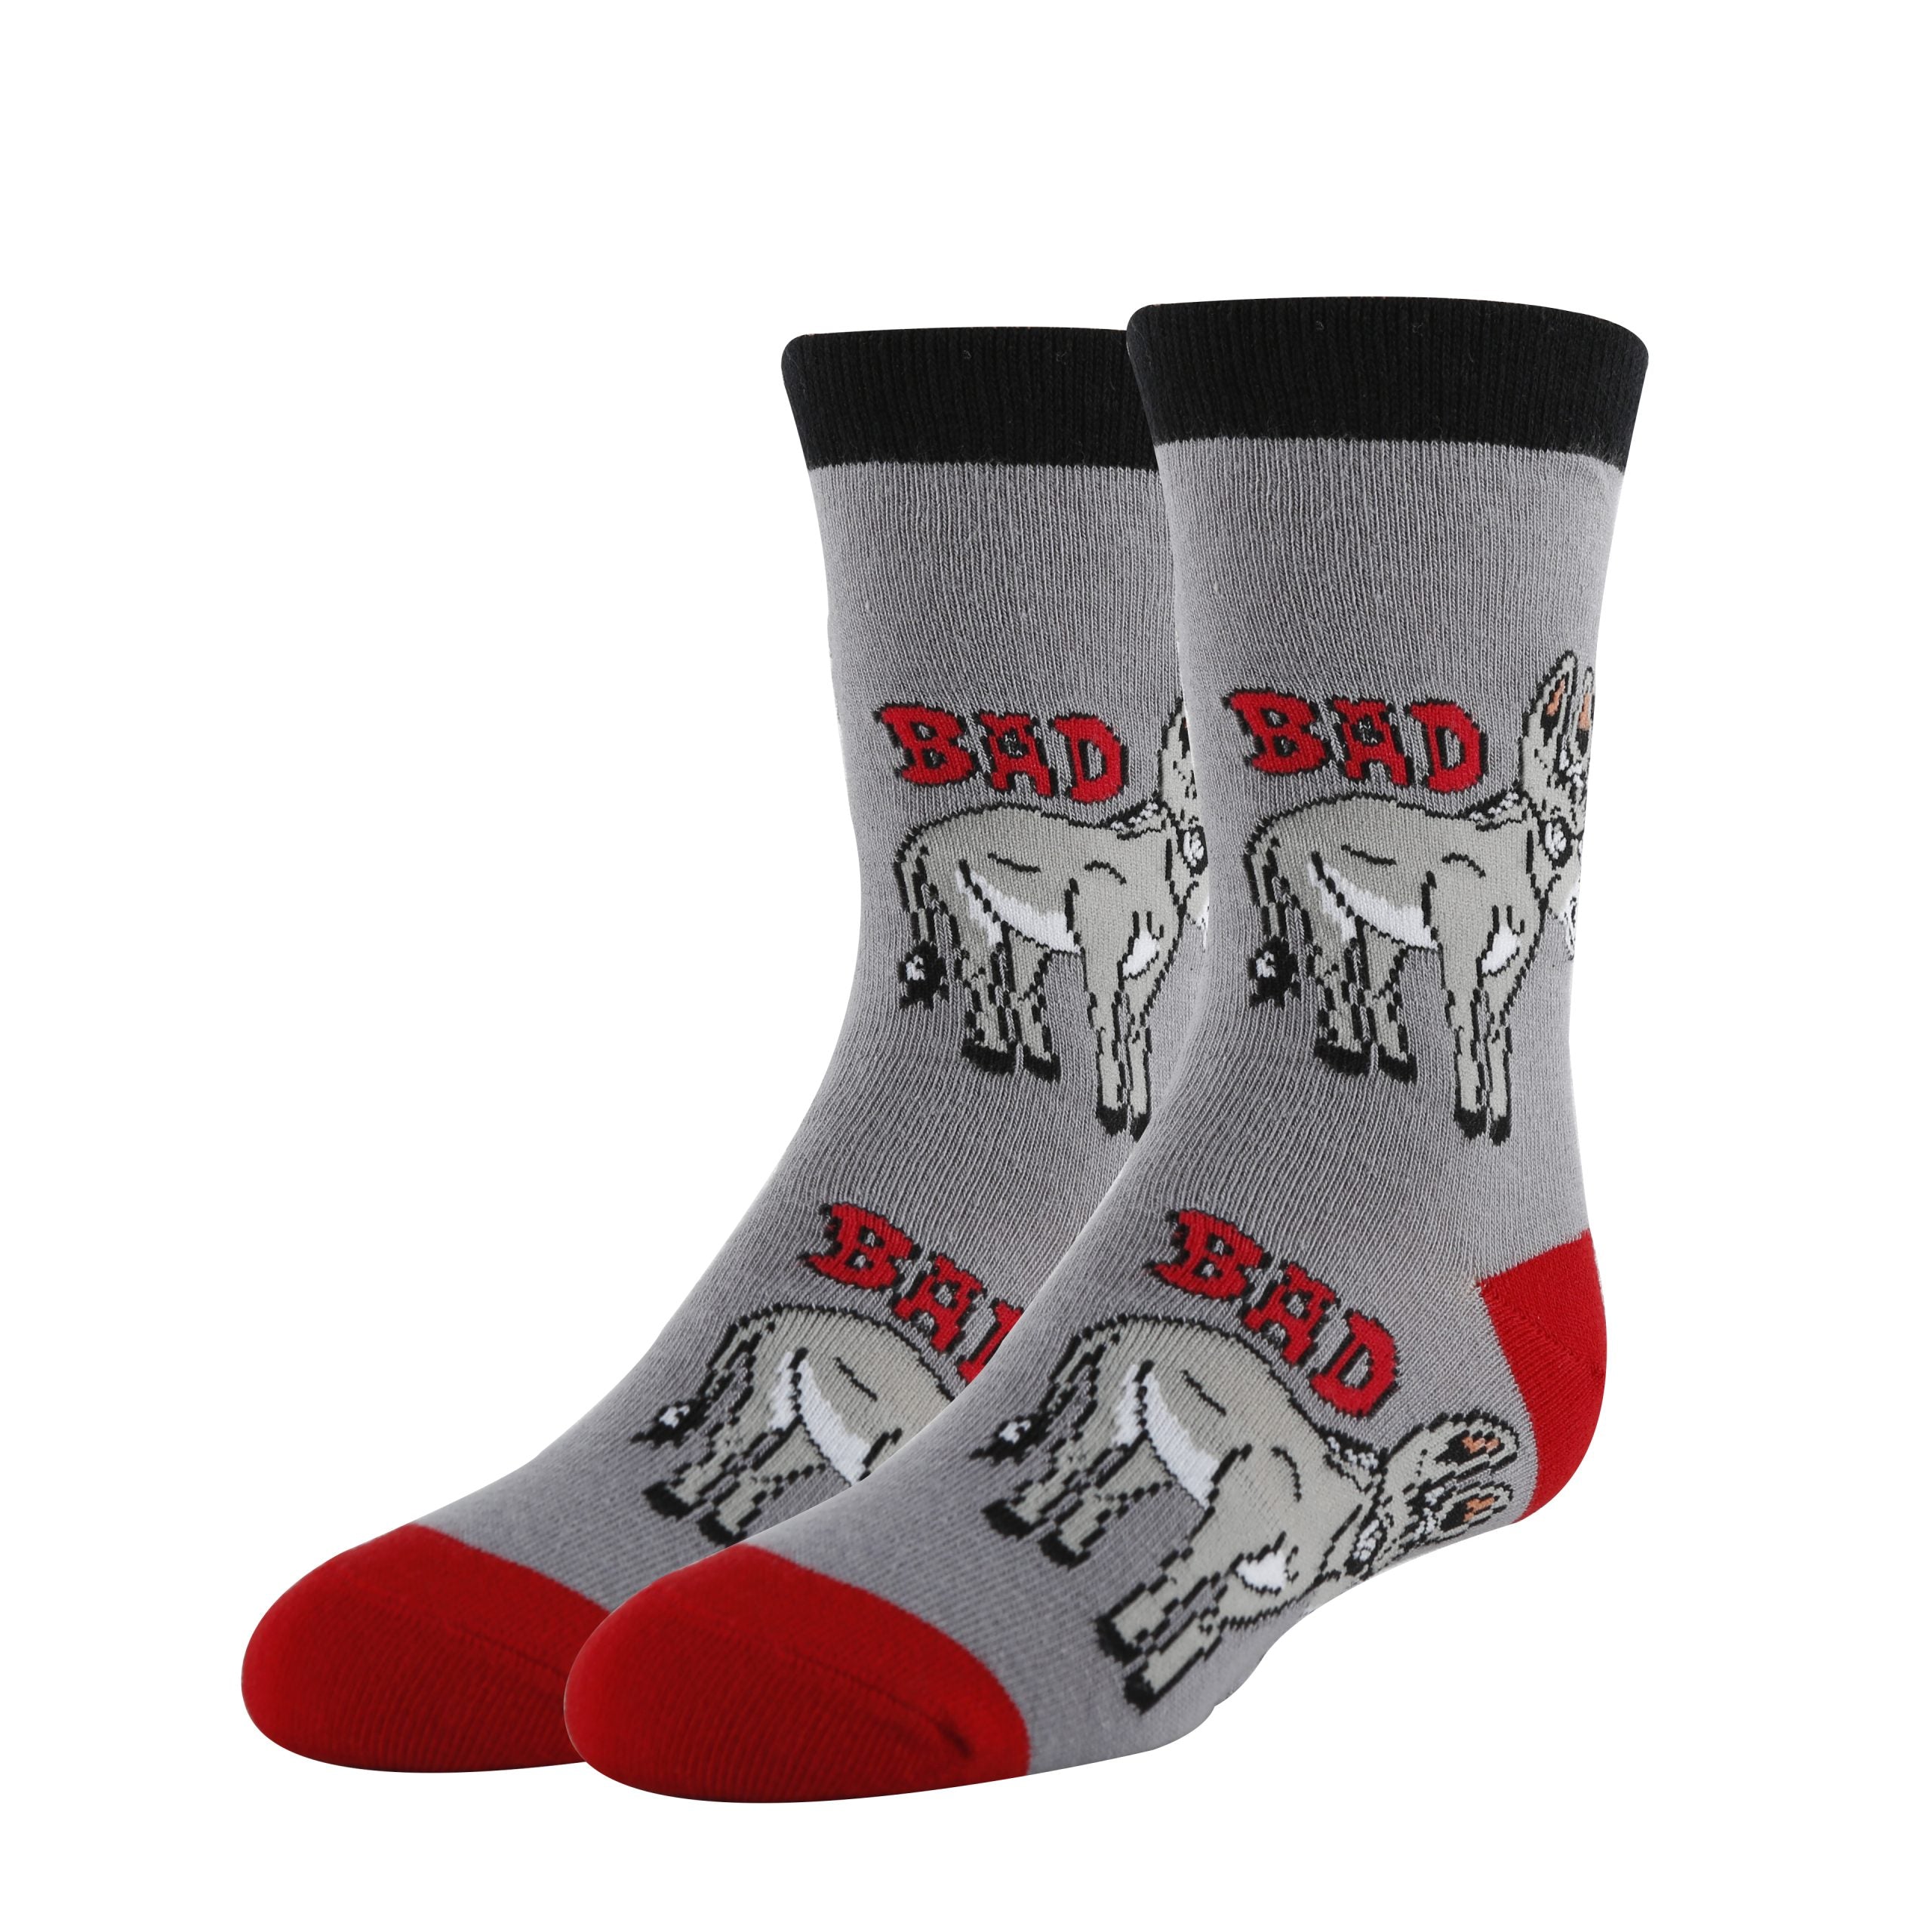 Bad Donkey Socks | Funny Crew Socks for Kids